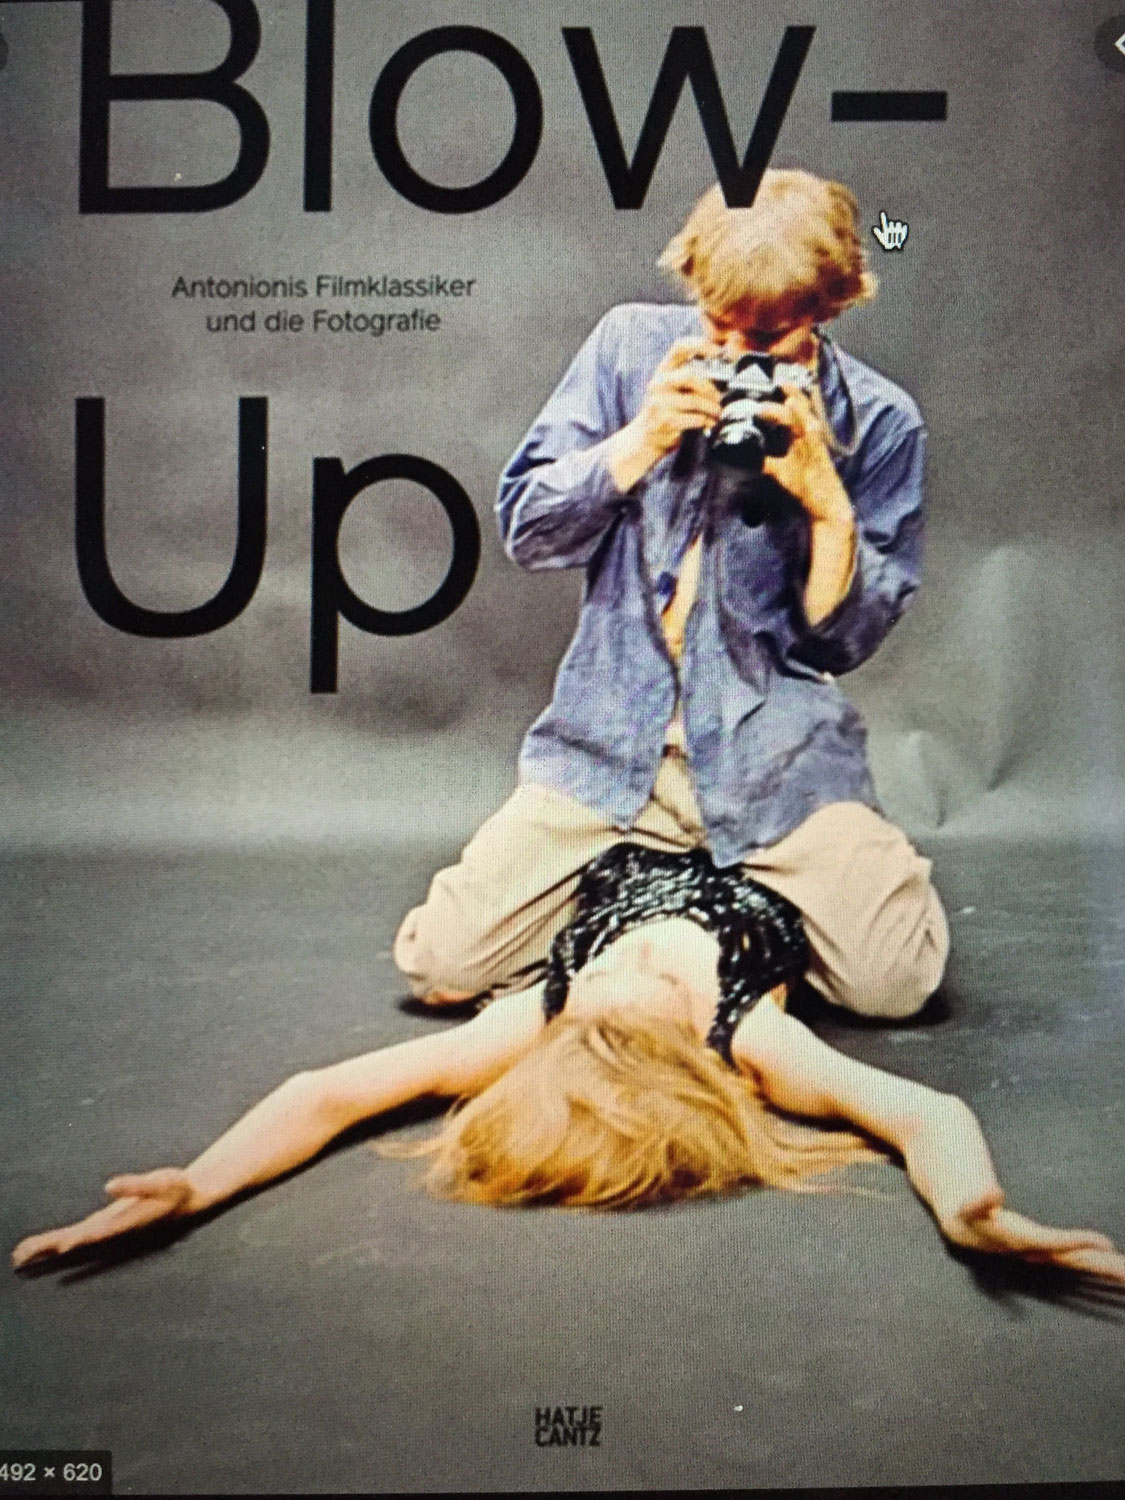 Titel des Buches über den Film "Blow up"